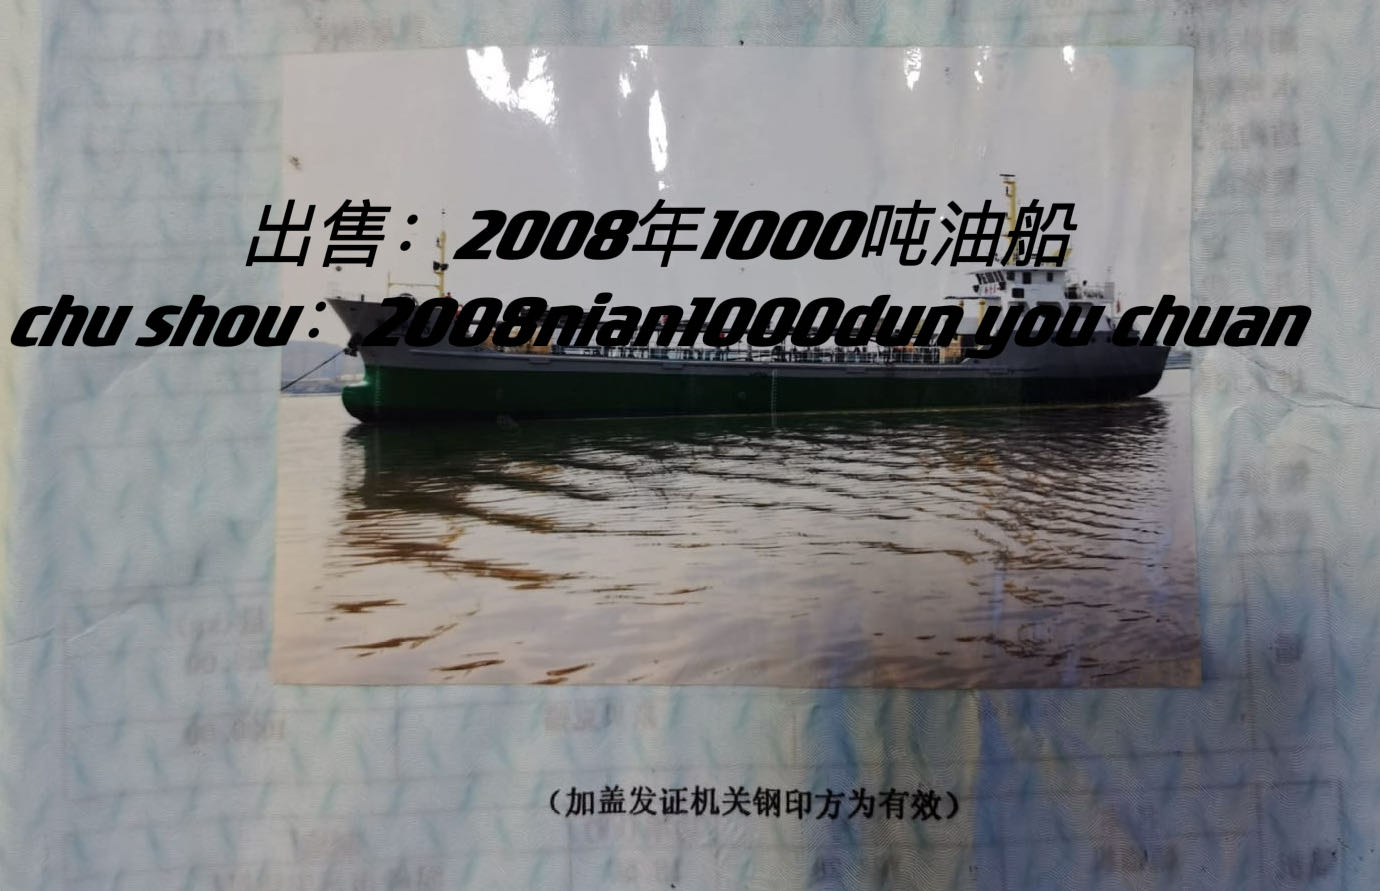 出卖2008年1000吨油船 祸建 宁德市-2.jpg